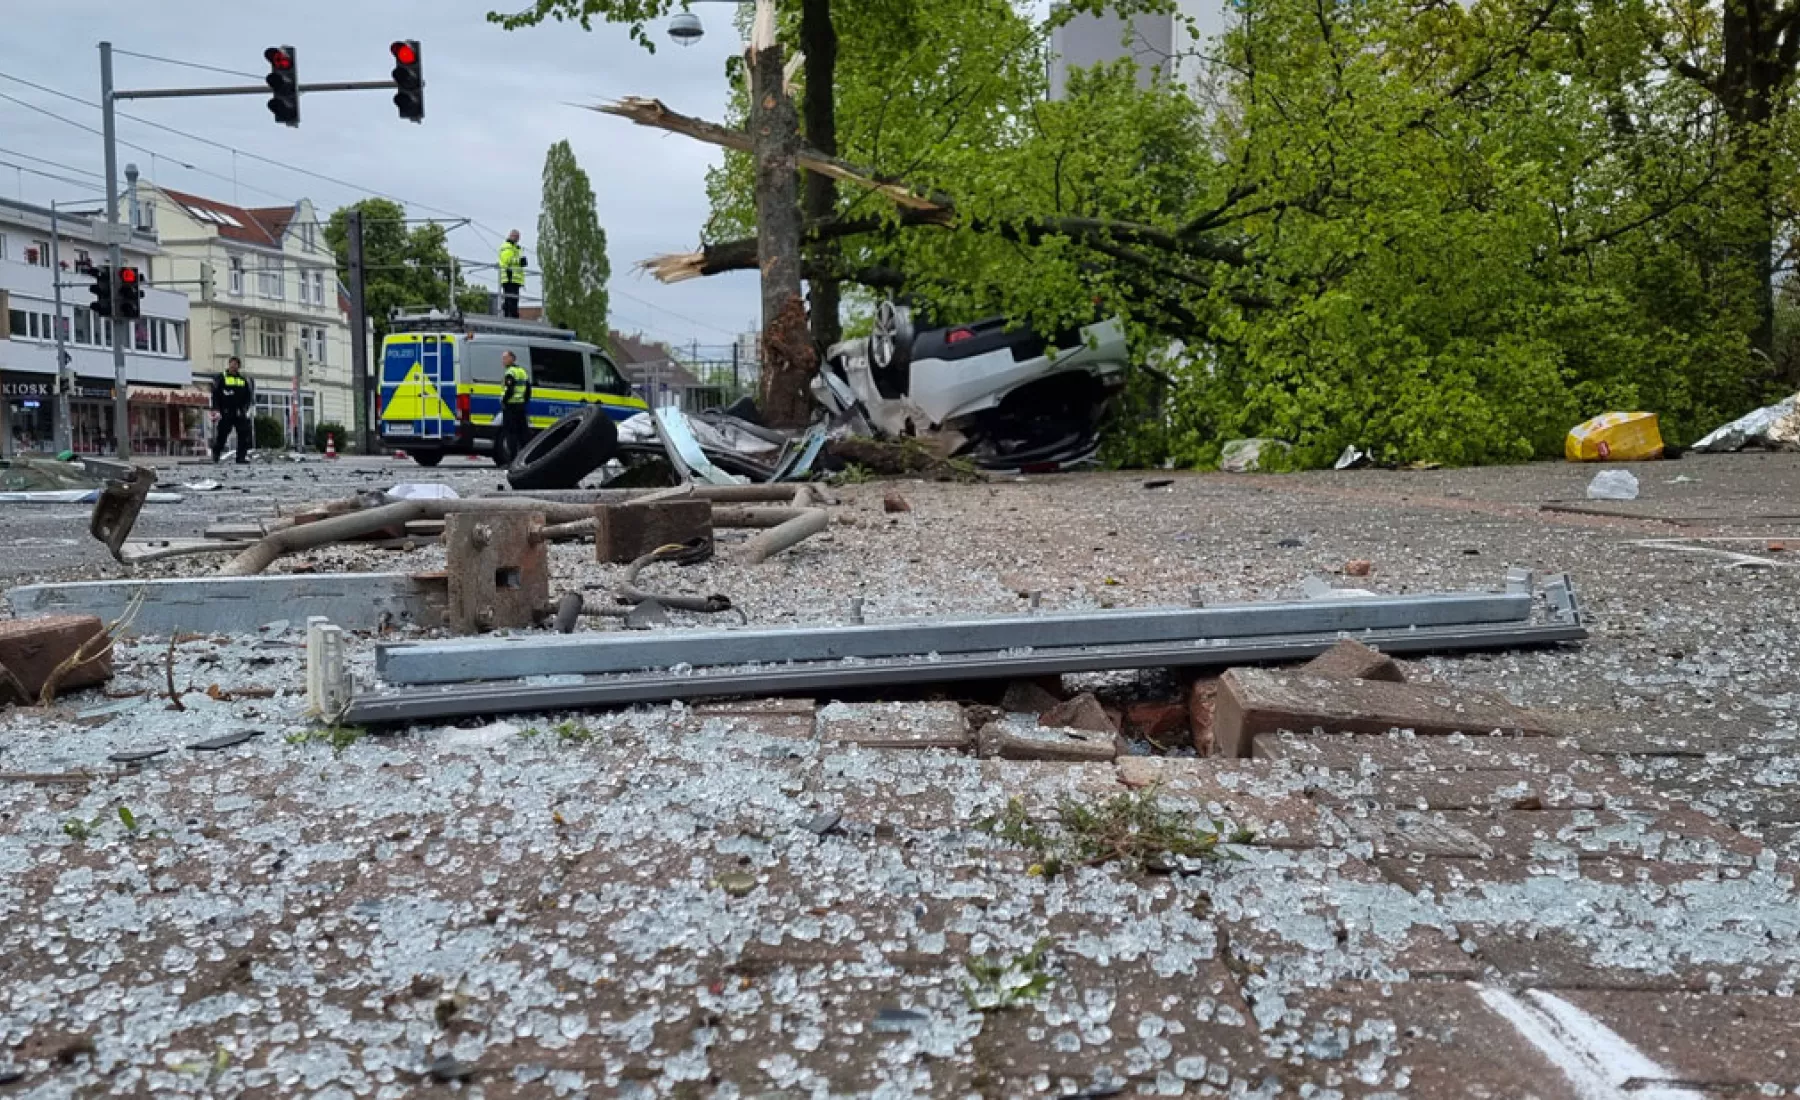 Hannover: Glassplittern auf der Straße, nachdem ein Auto gegen einen Baum geprallt ist